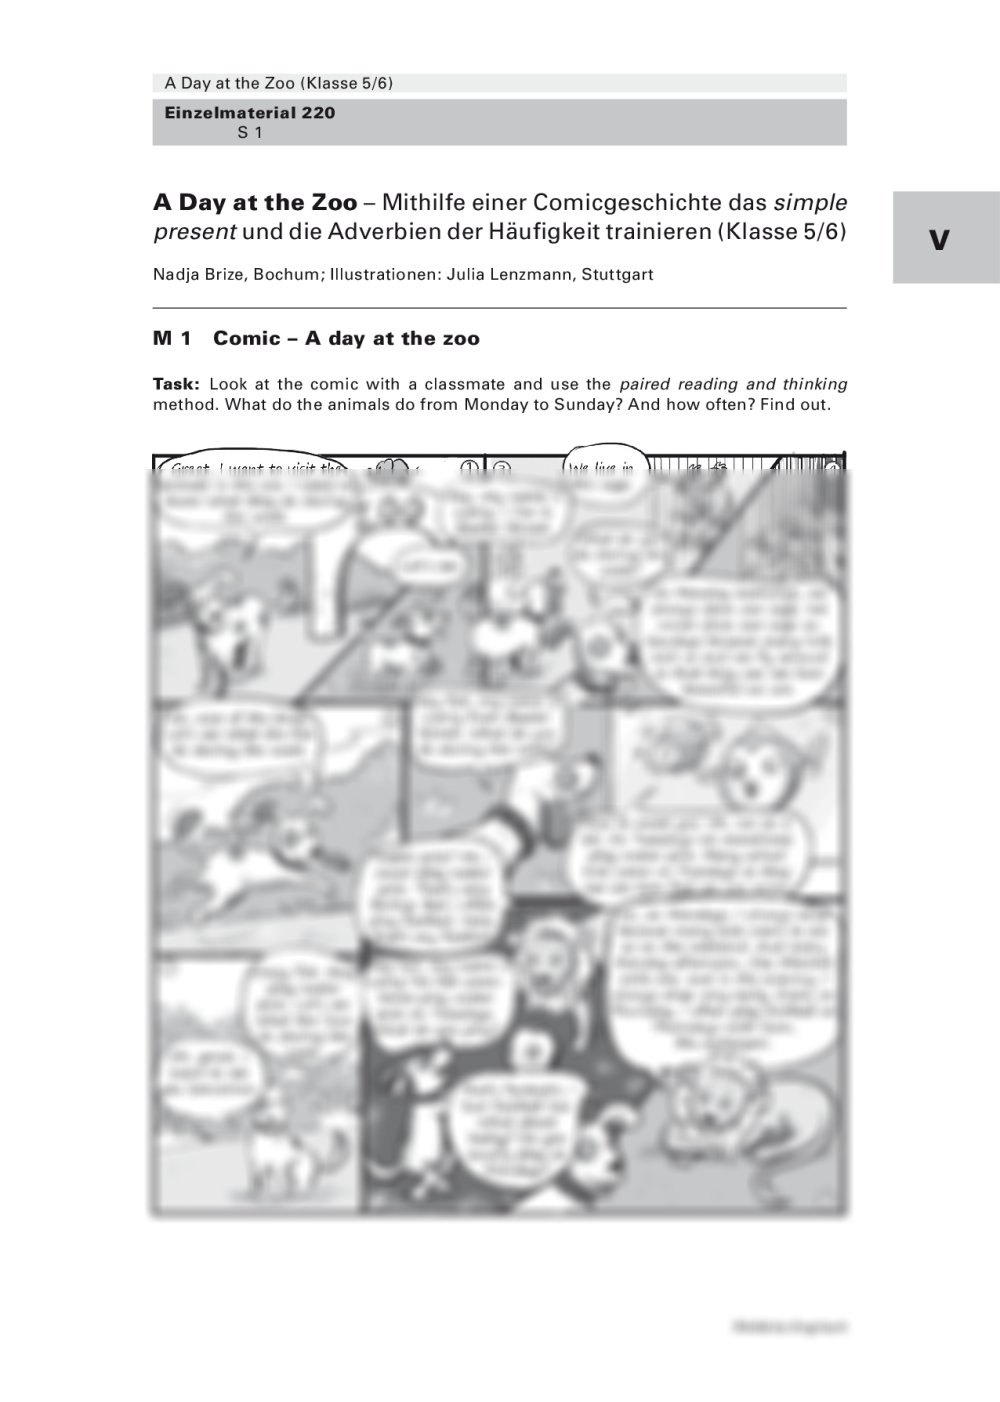 Mithilfe einer Comicgeschichte das simple present und die Adverbien der Häufigkeit trainieren - Seite 1